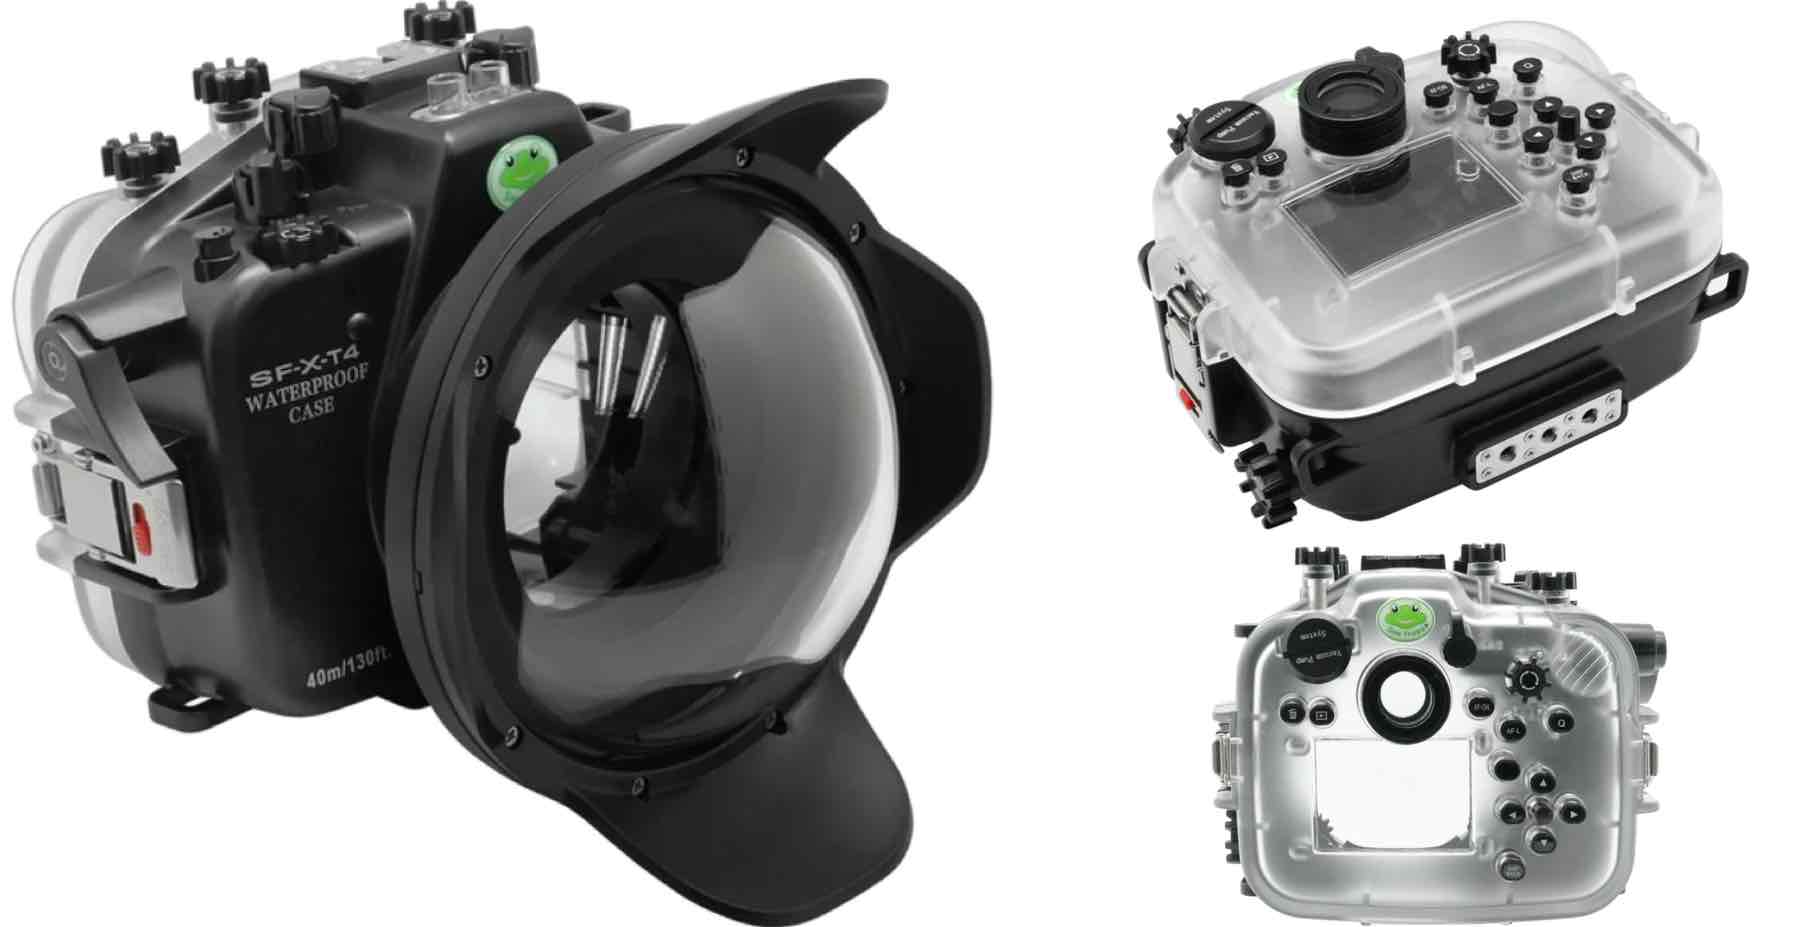 Boîtier de caméra sous-marine Fujifilm X-T4 40M/130FT avec port dôme sec  8. XF 18-55mm